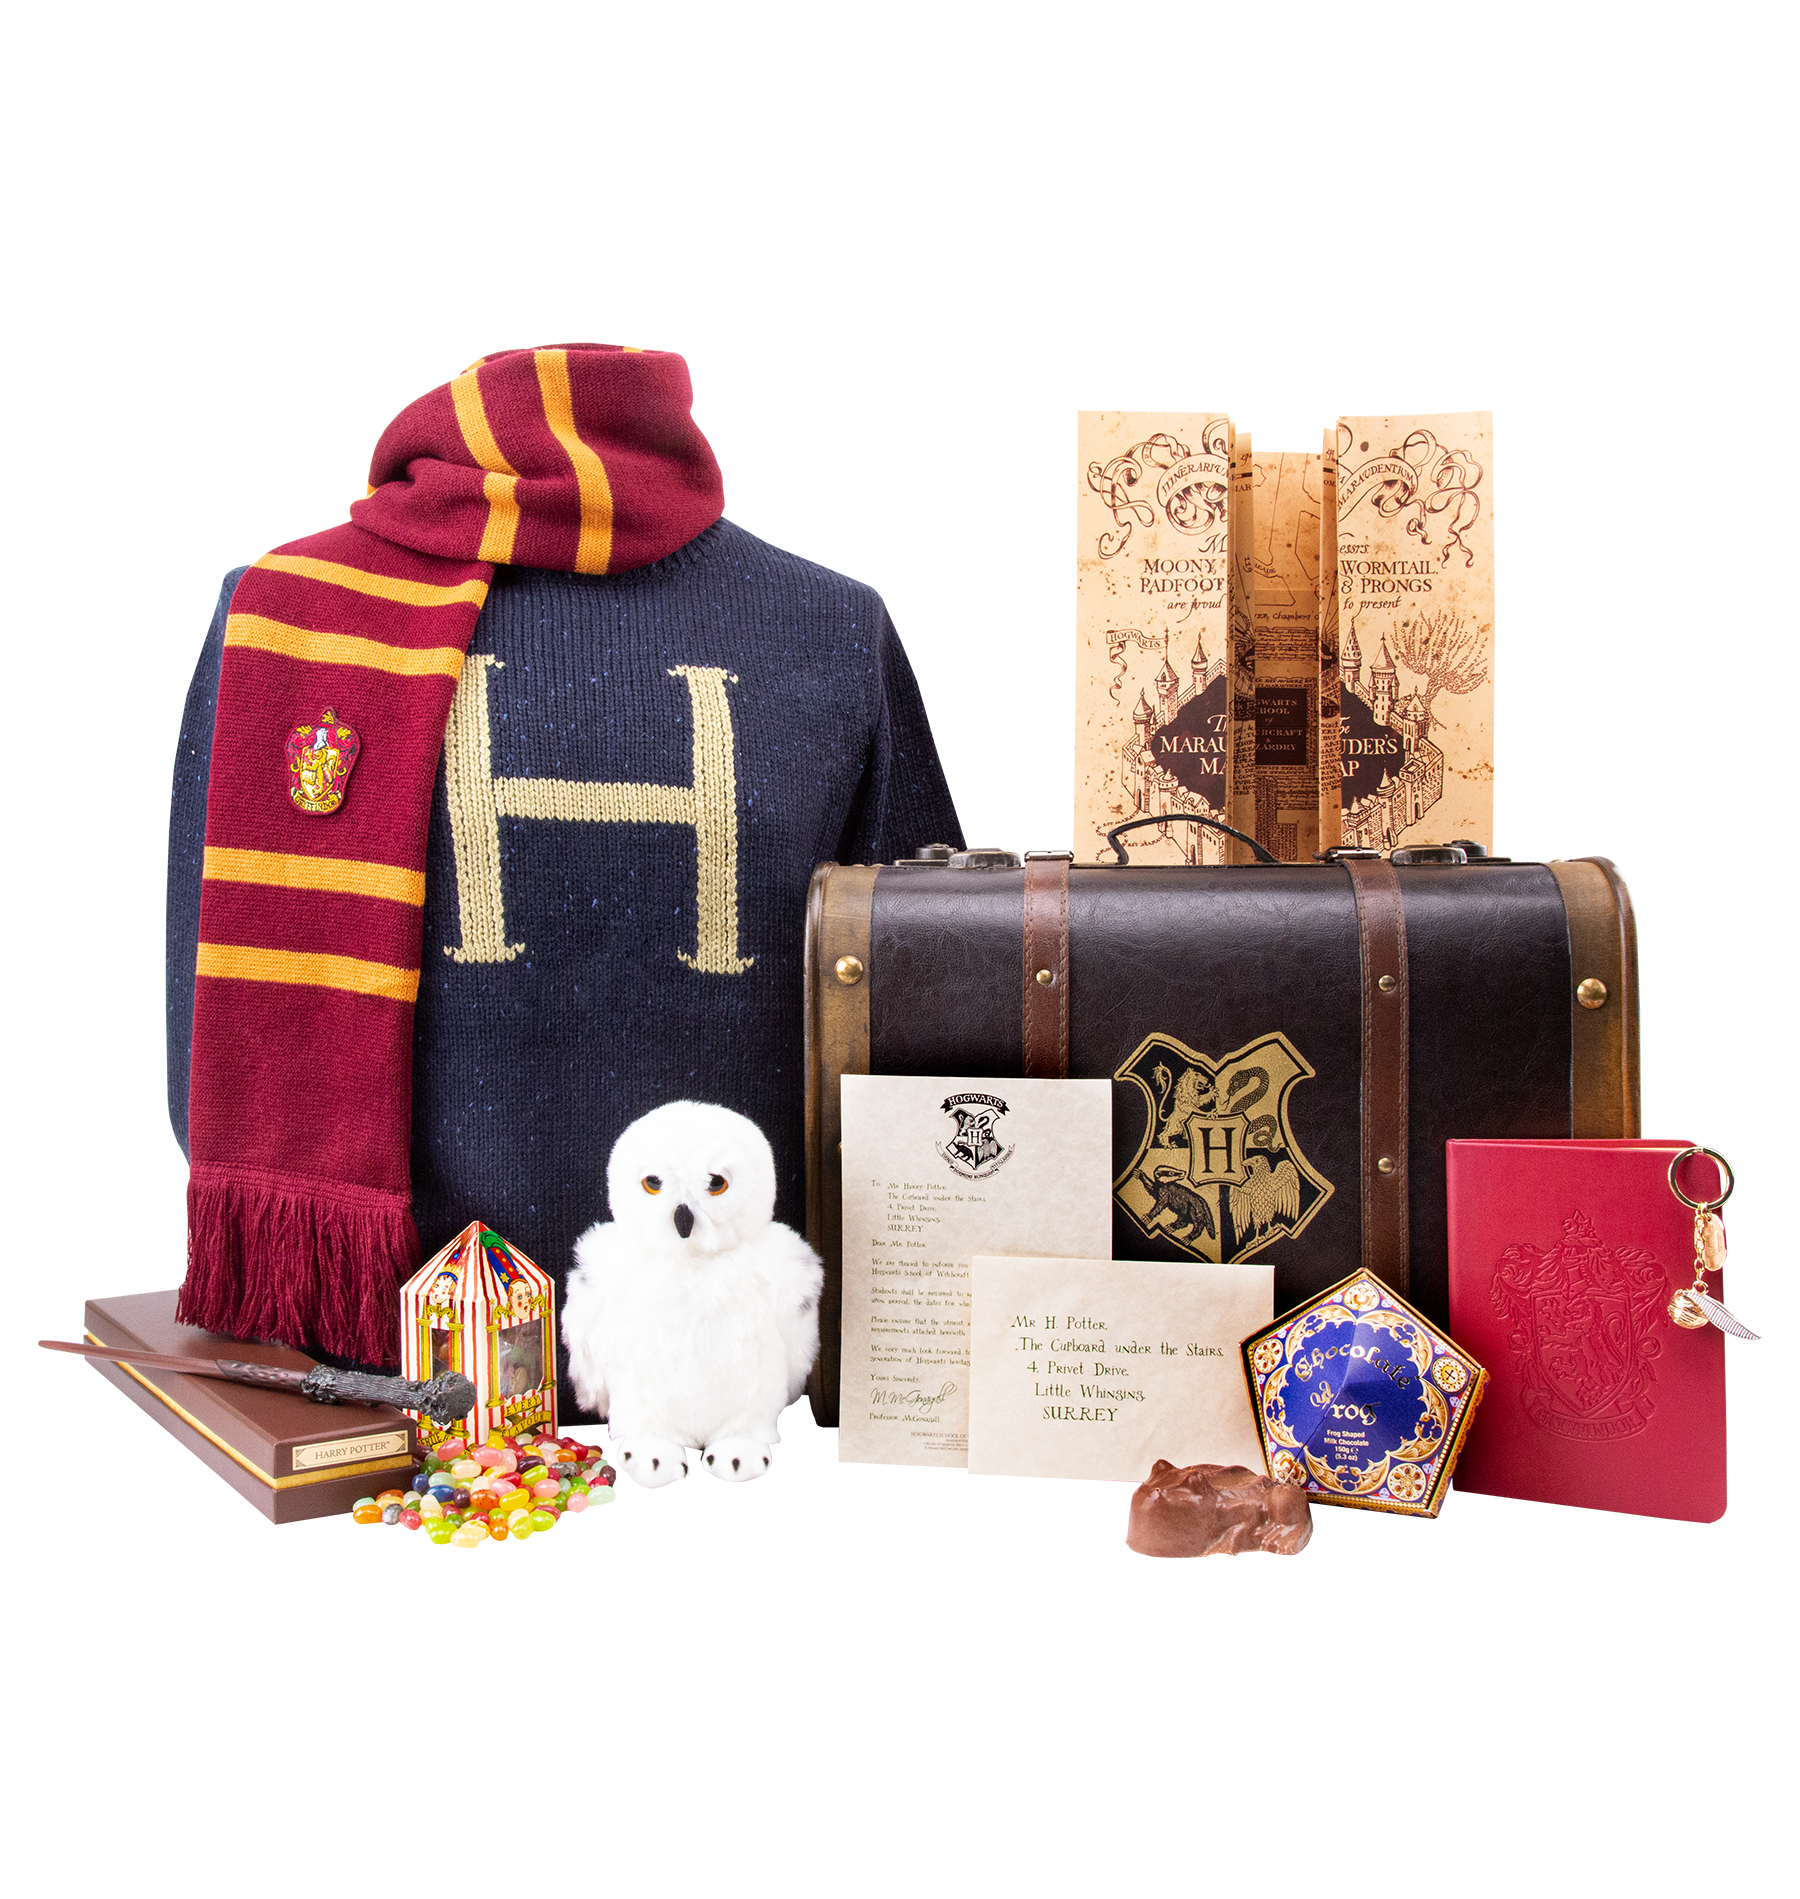 Harry Potter Gift Sets